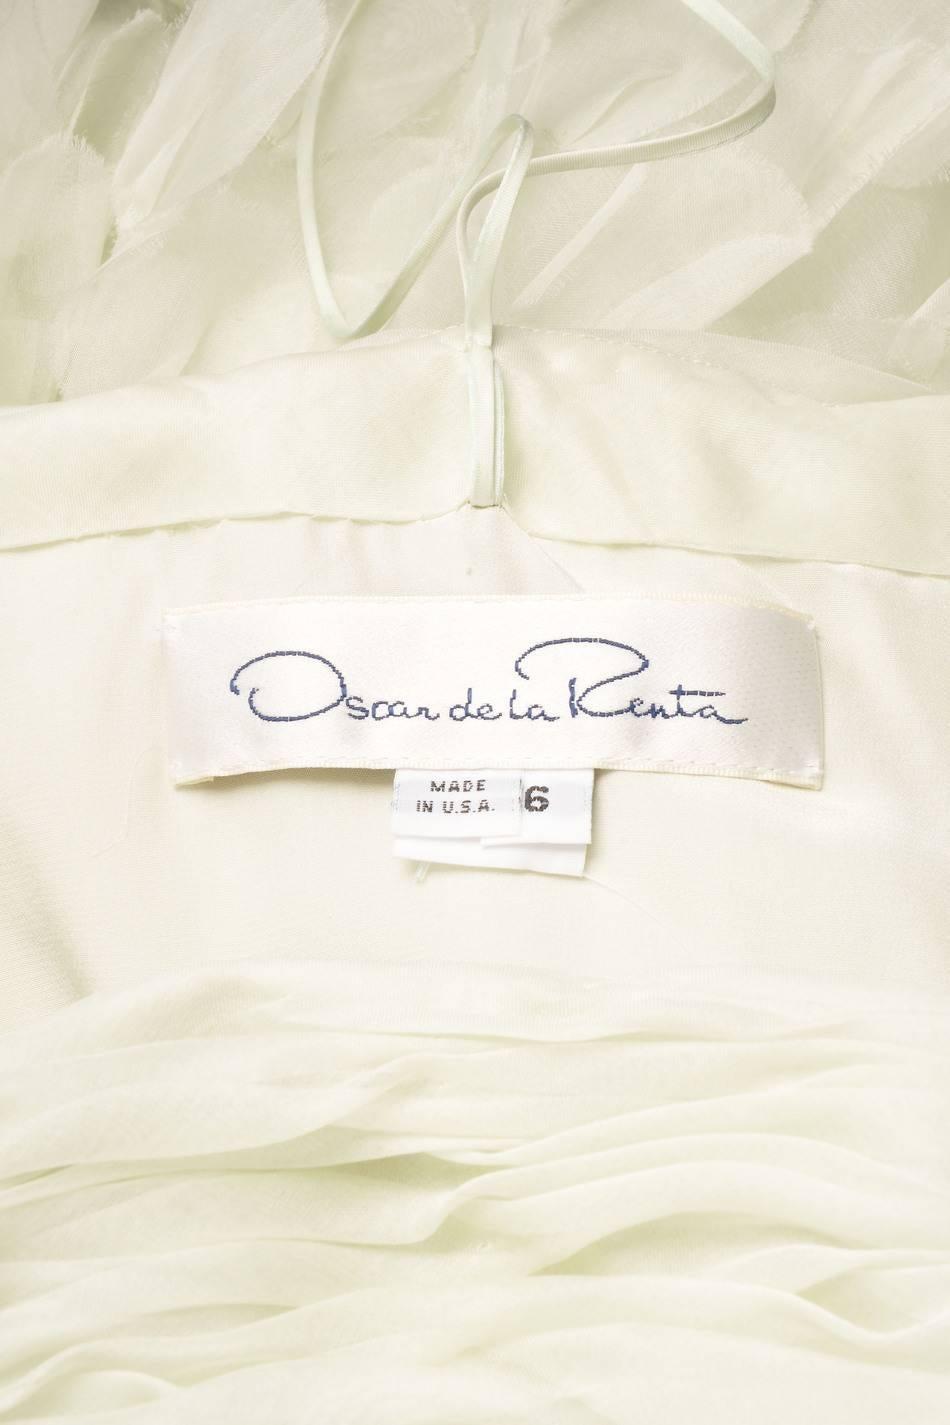 Oscar de la Renta Mint Green Silk Paillette Ruched Strapless Gown SZ 6 For Sale 1